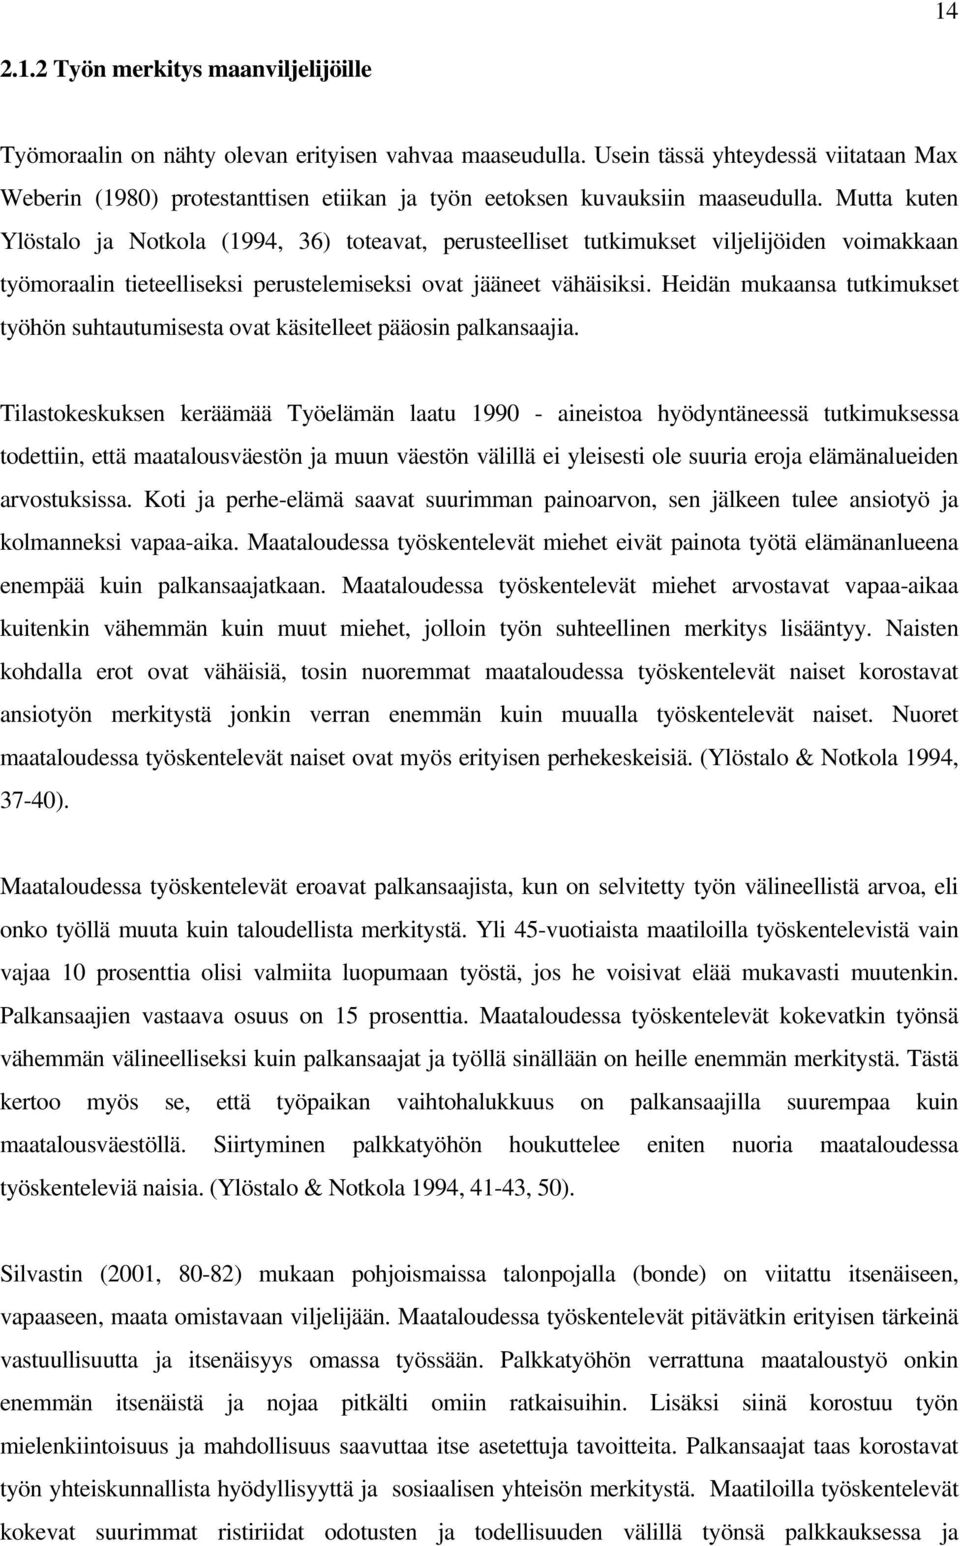 Mutta kuten Ylöstalo ja Notkola (1994, 36) toteavat, perusteelliset tutkimukset viljelijöiden voimakkaan työmoraalin tieteelliseksi perustelemiseksi ovat jääneet vähäisiksi.